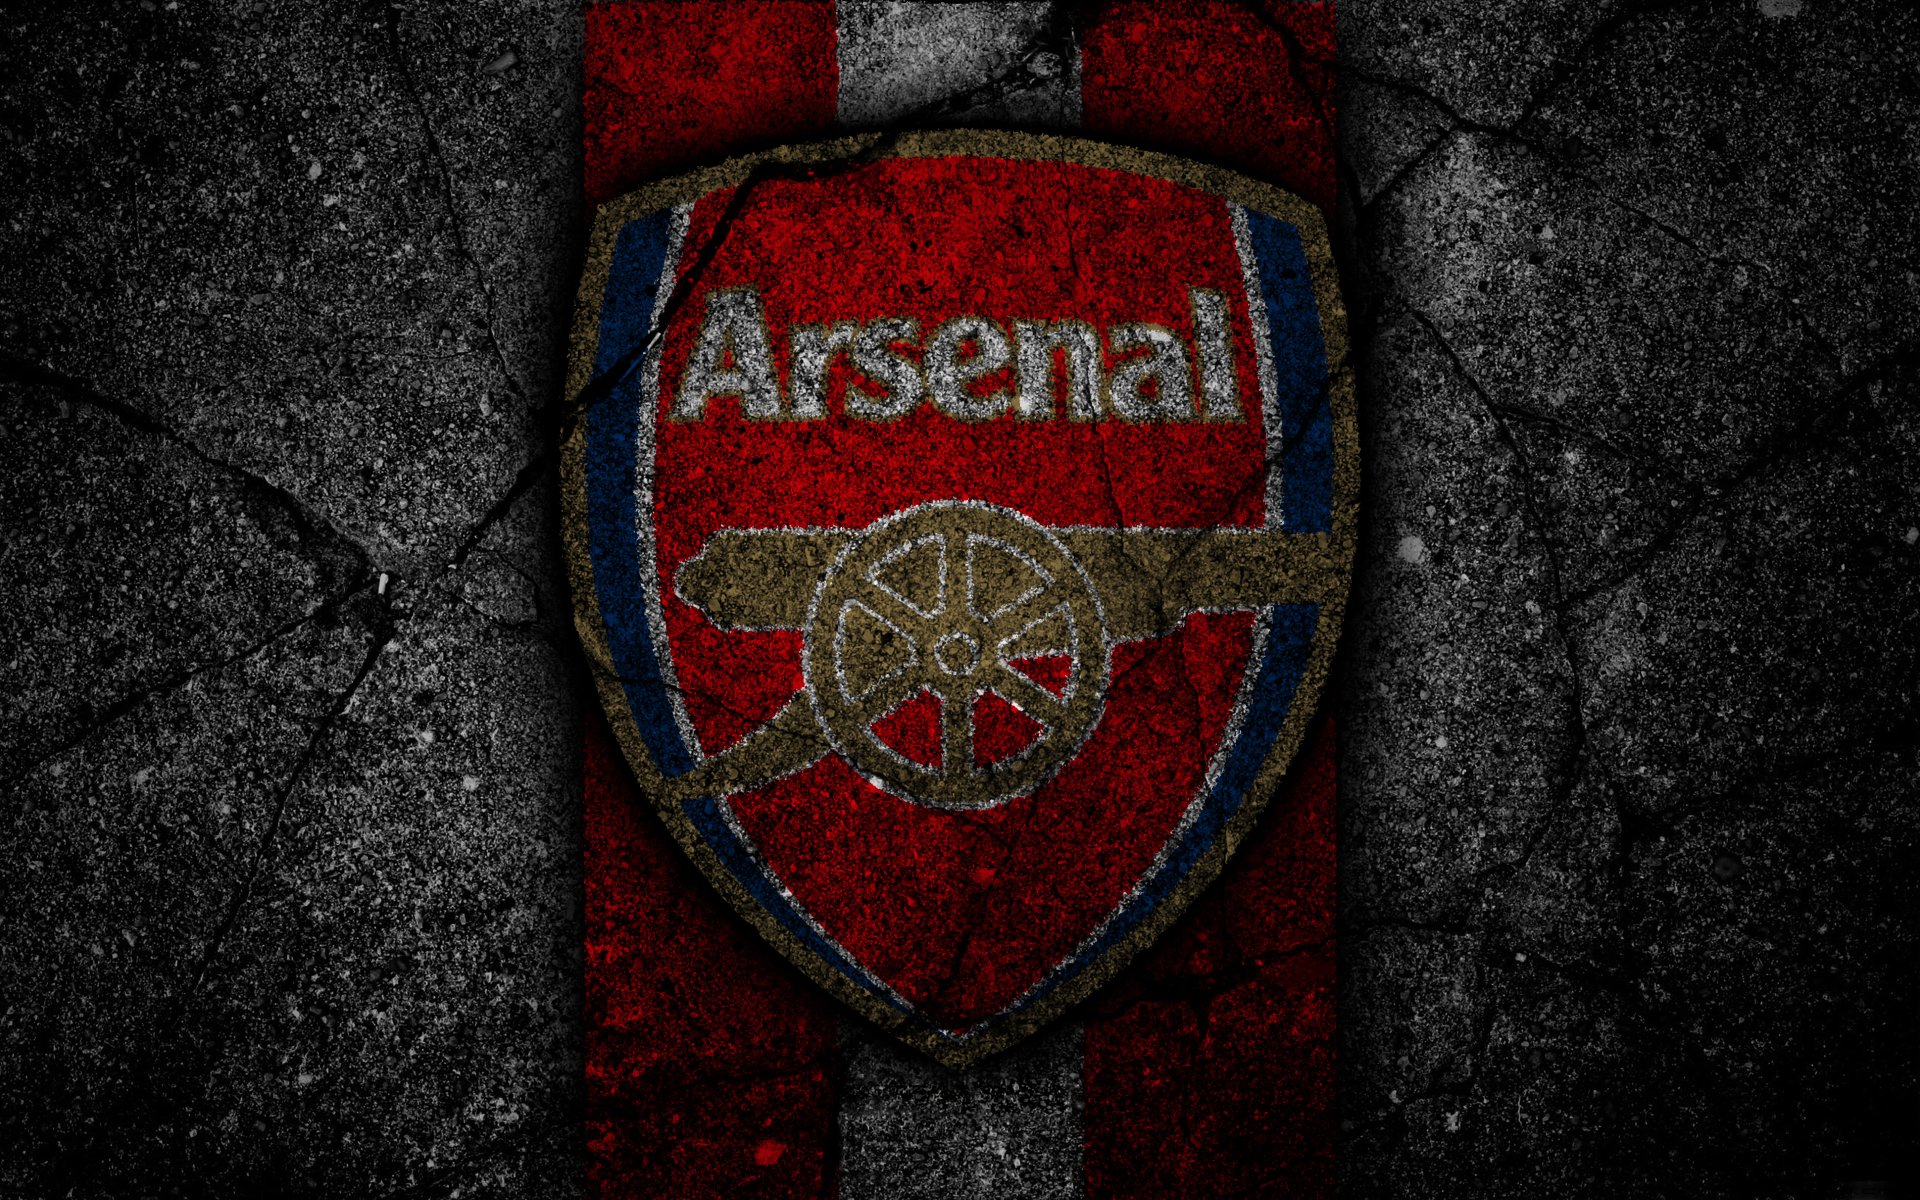 Arsenal Logos Wallpaper